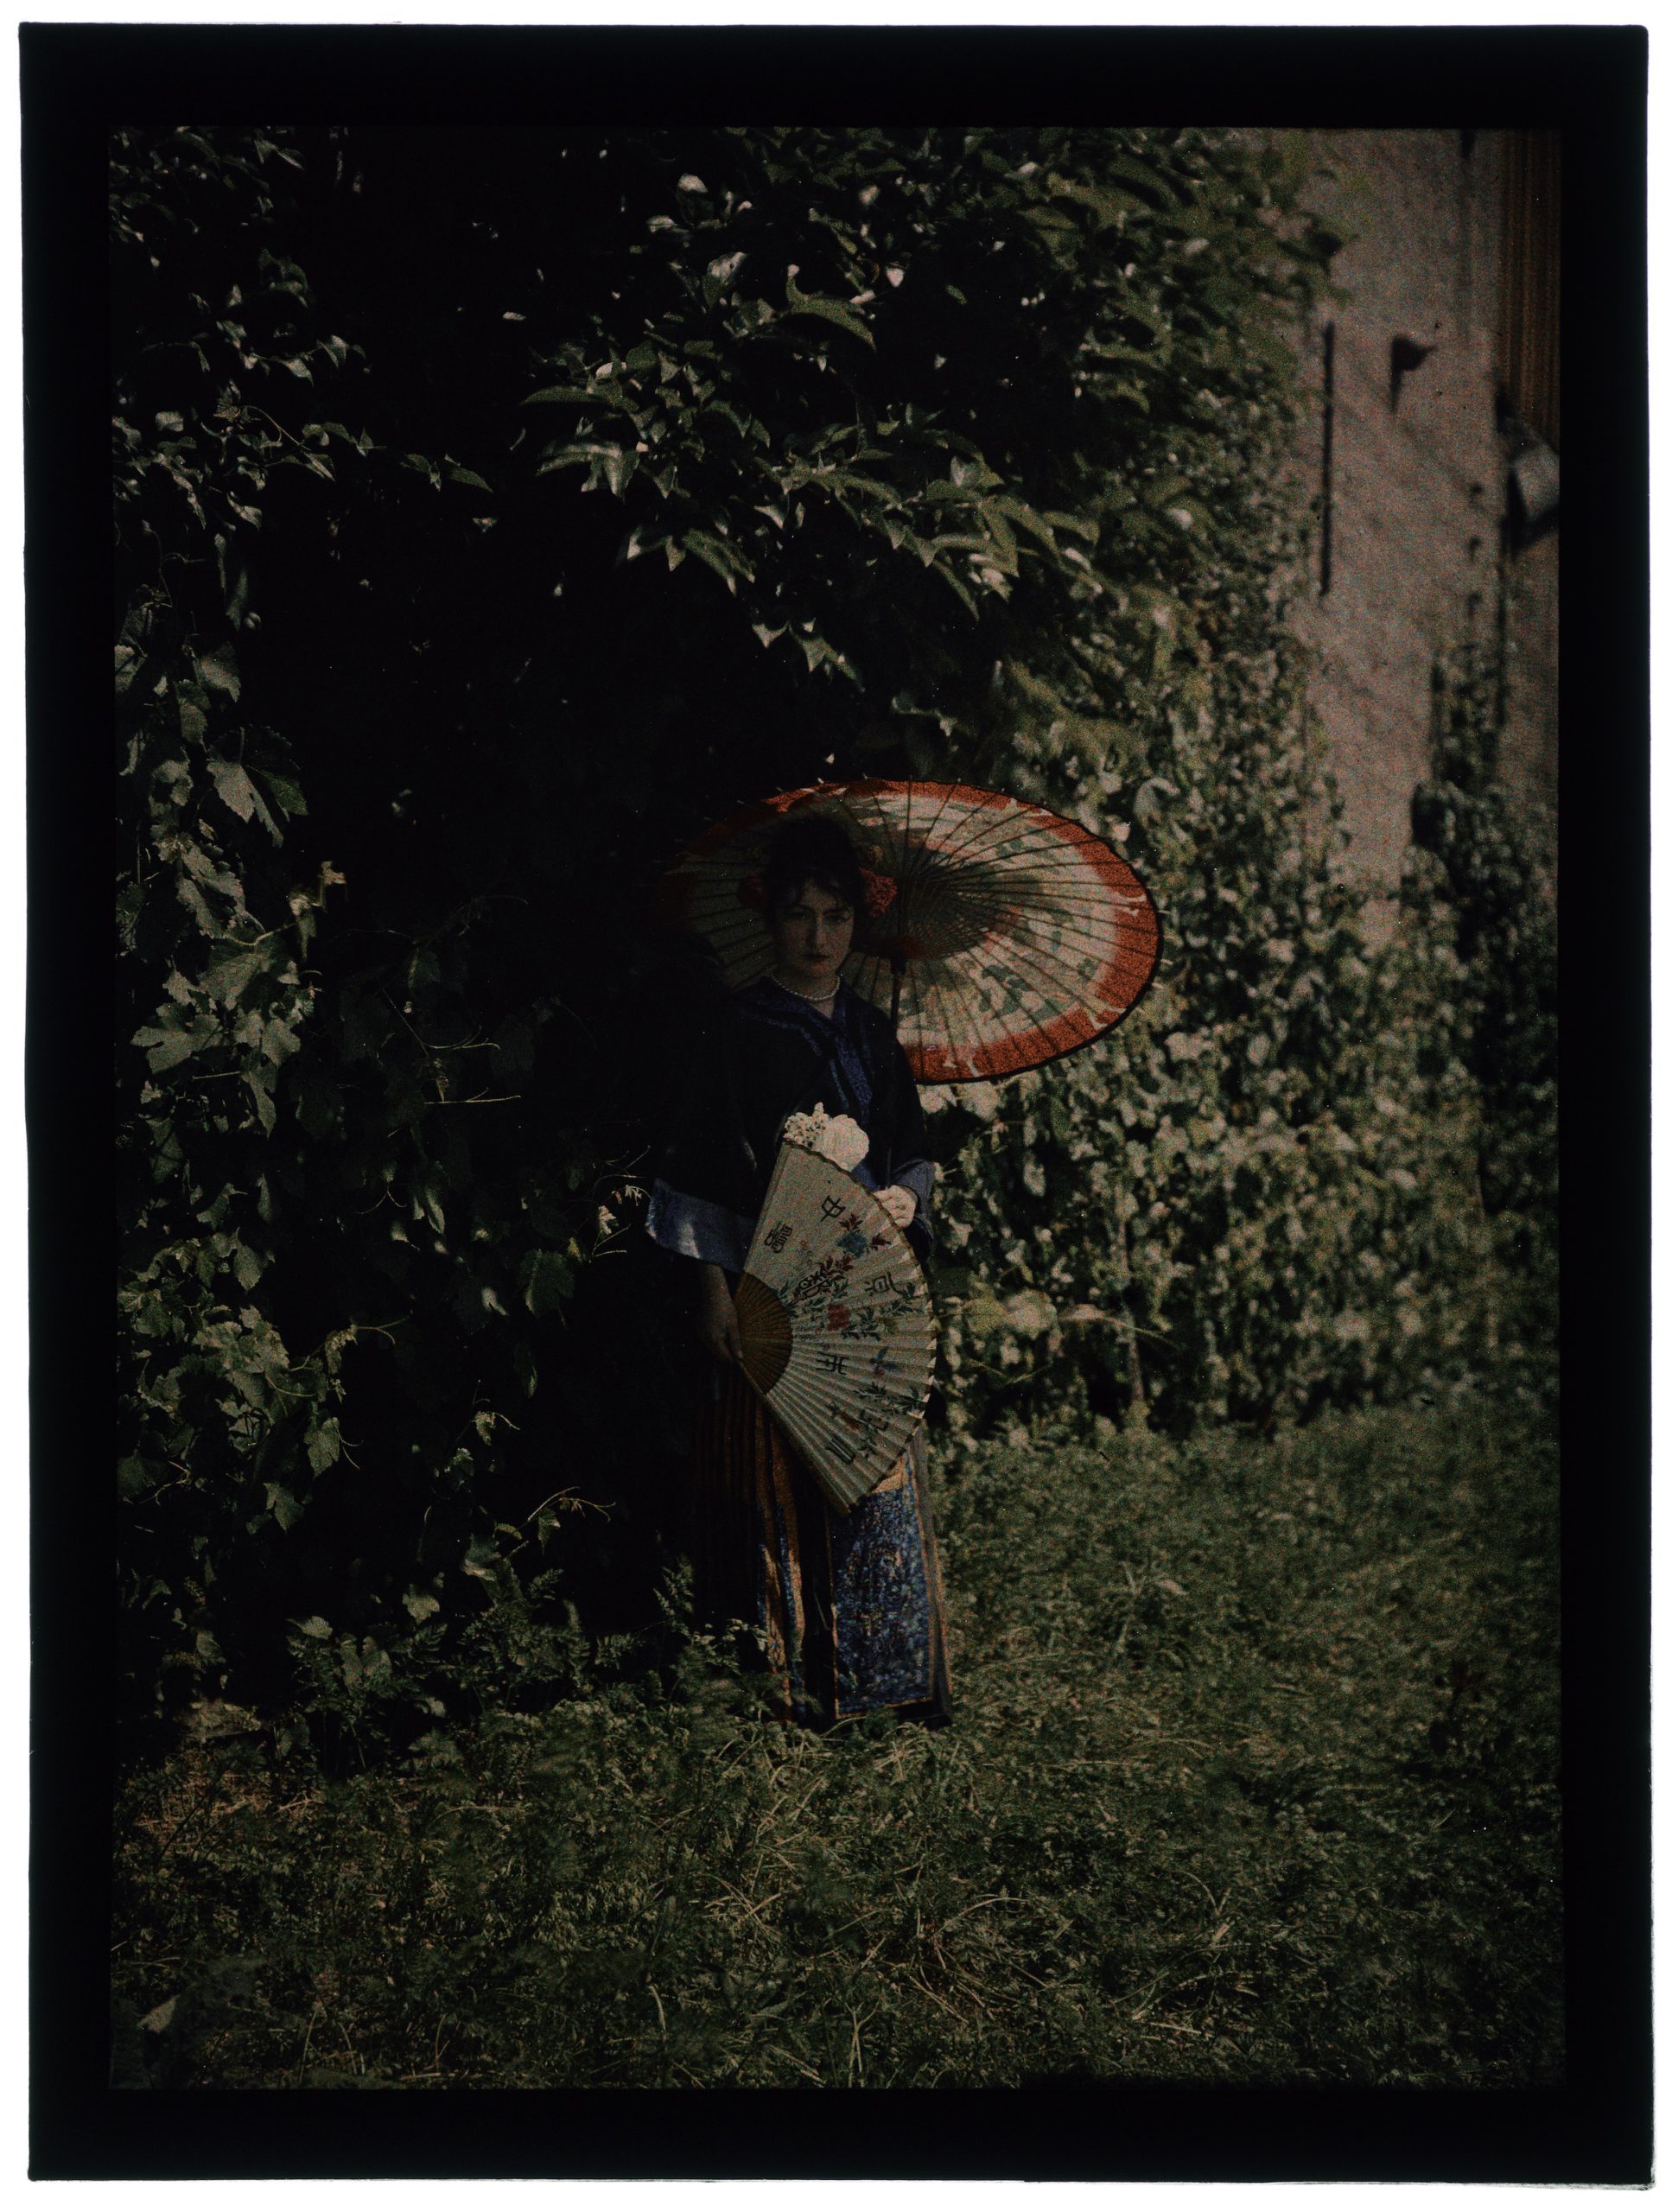 Femme en costume japonaise dans le jardin